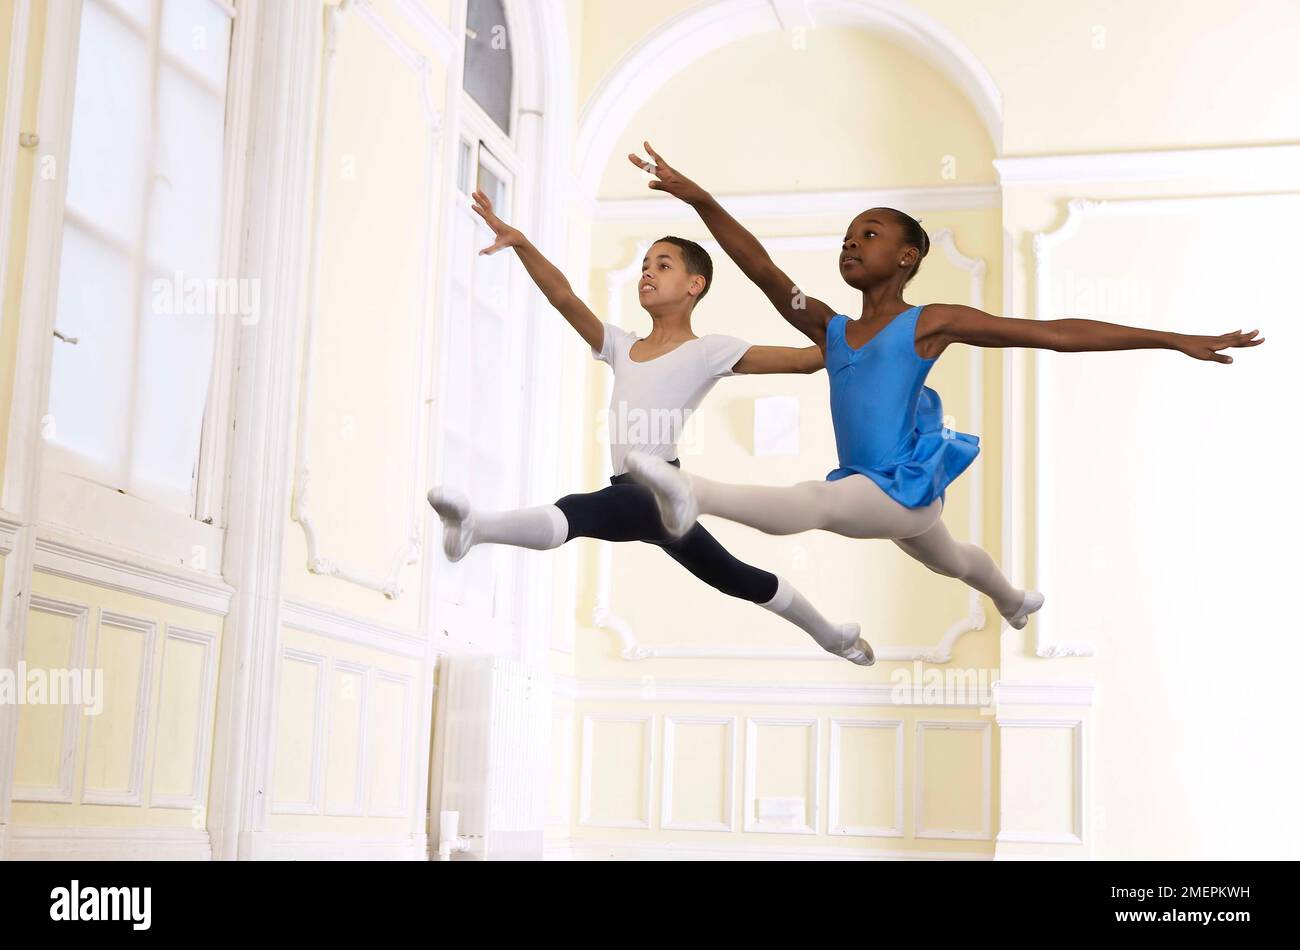 Un ragazzo e una ragazza ballerini eseguono un grand jete saltando la fase Foto Stock